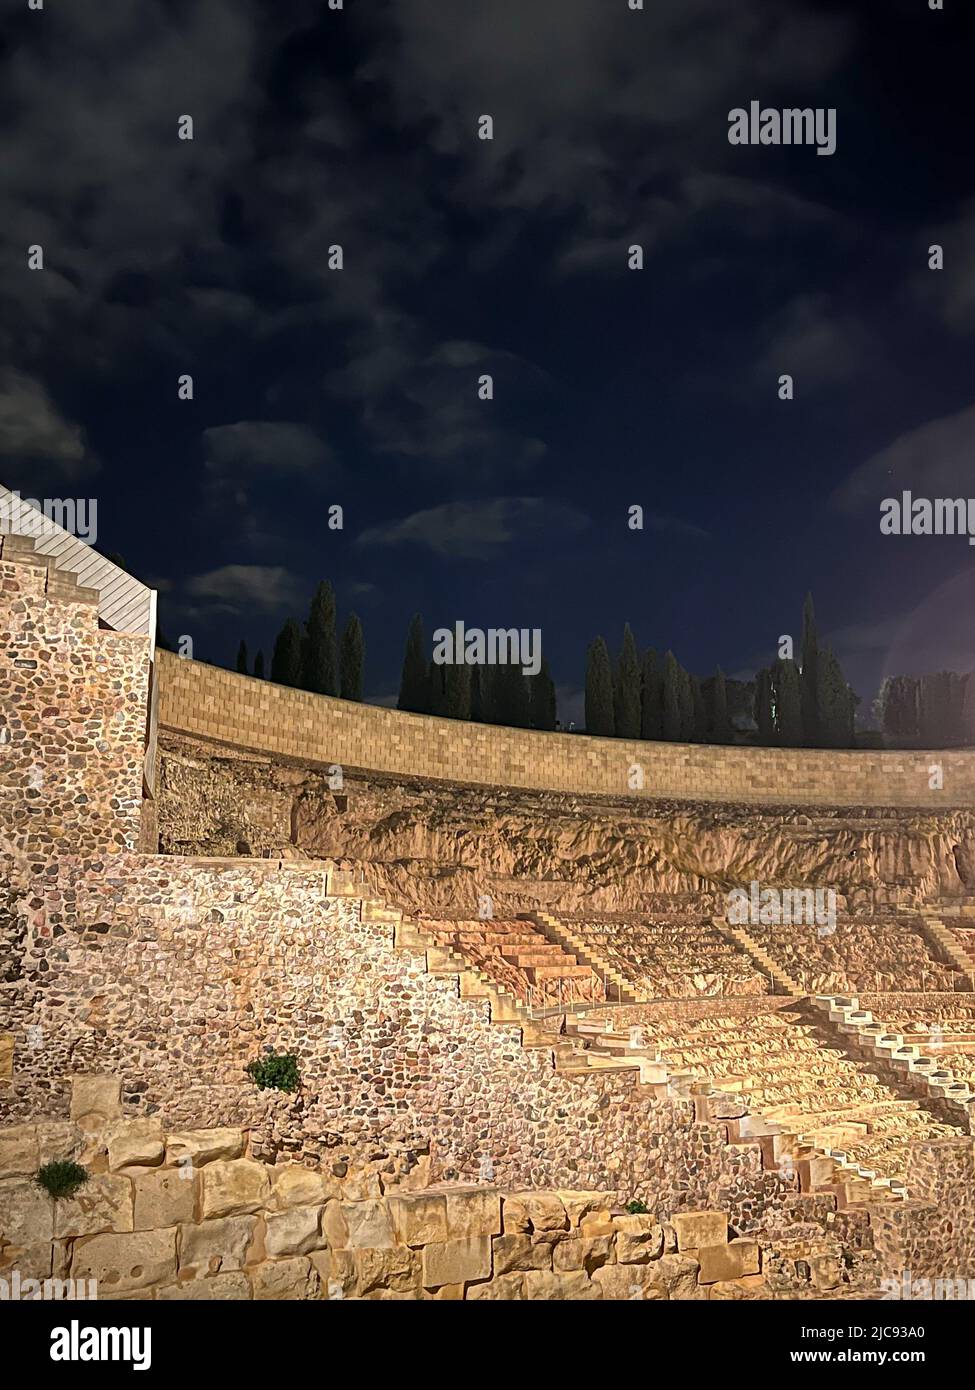 Teatro romano de Cartagena, España por la noche Stock Photo